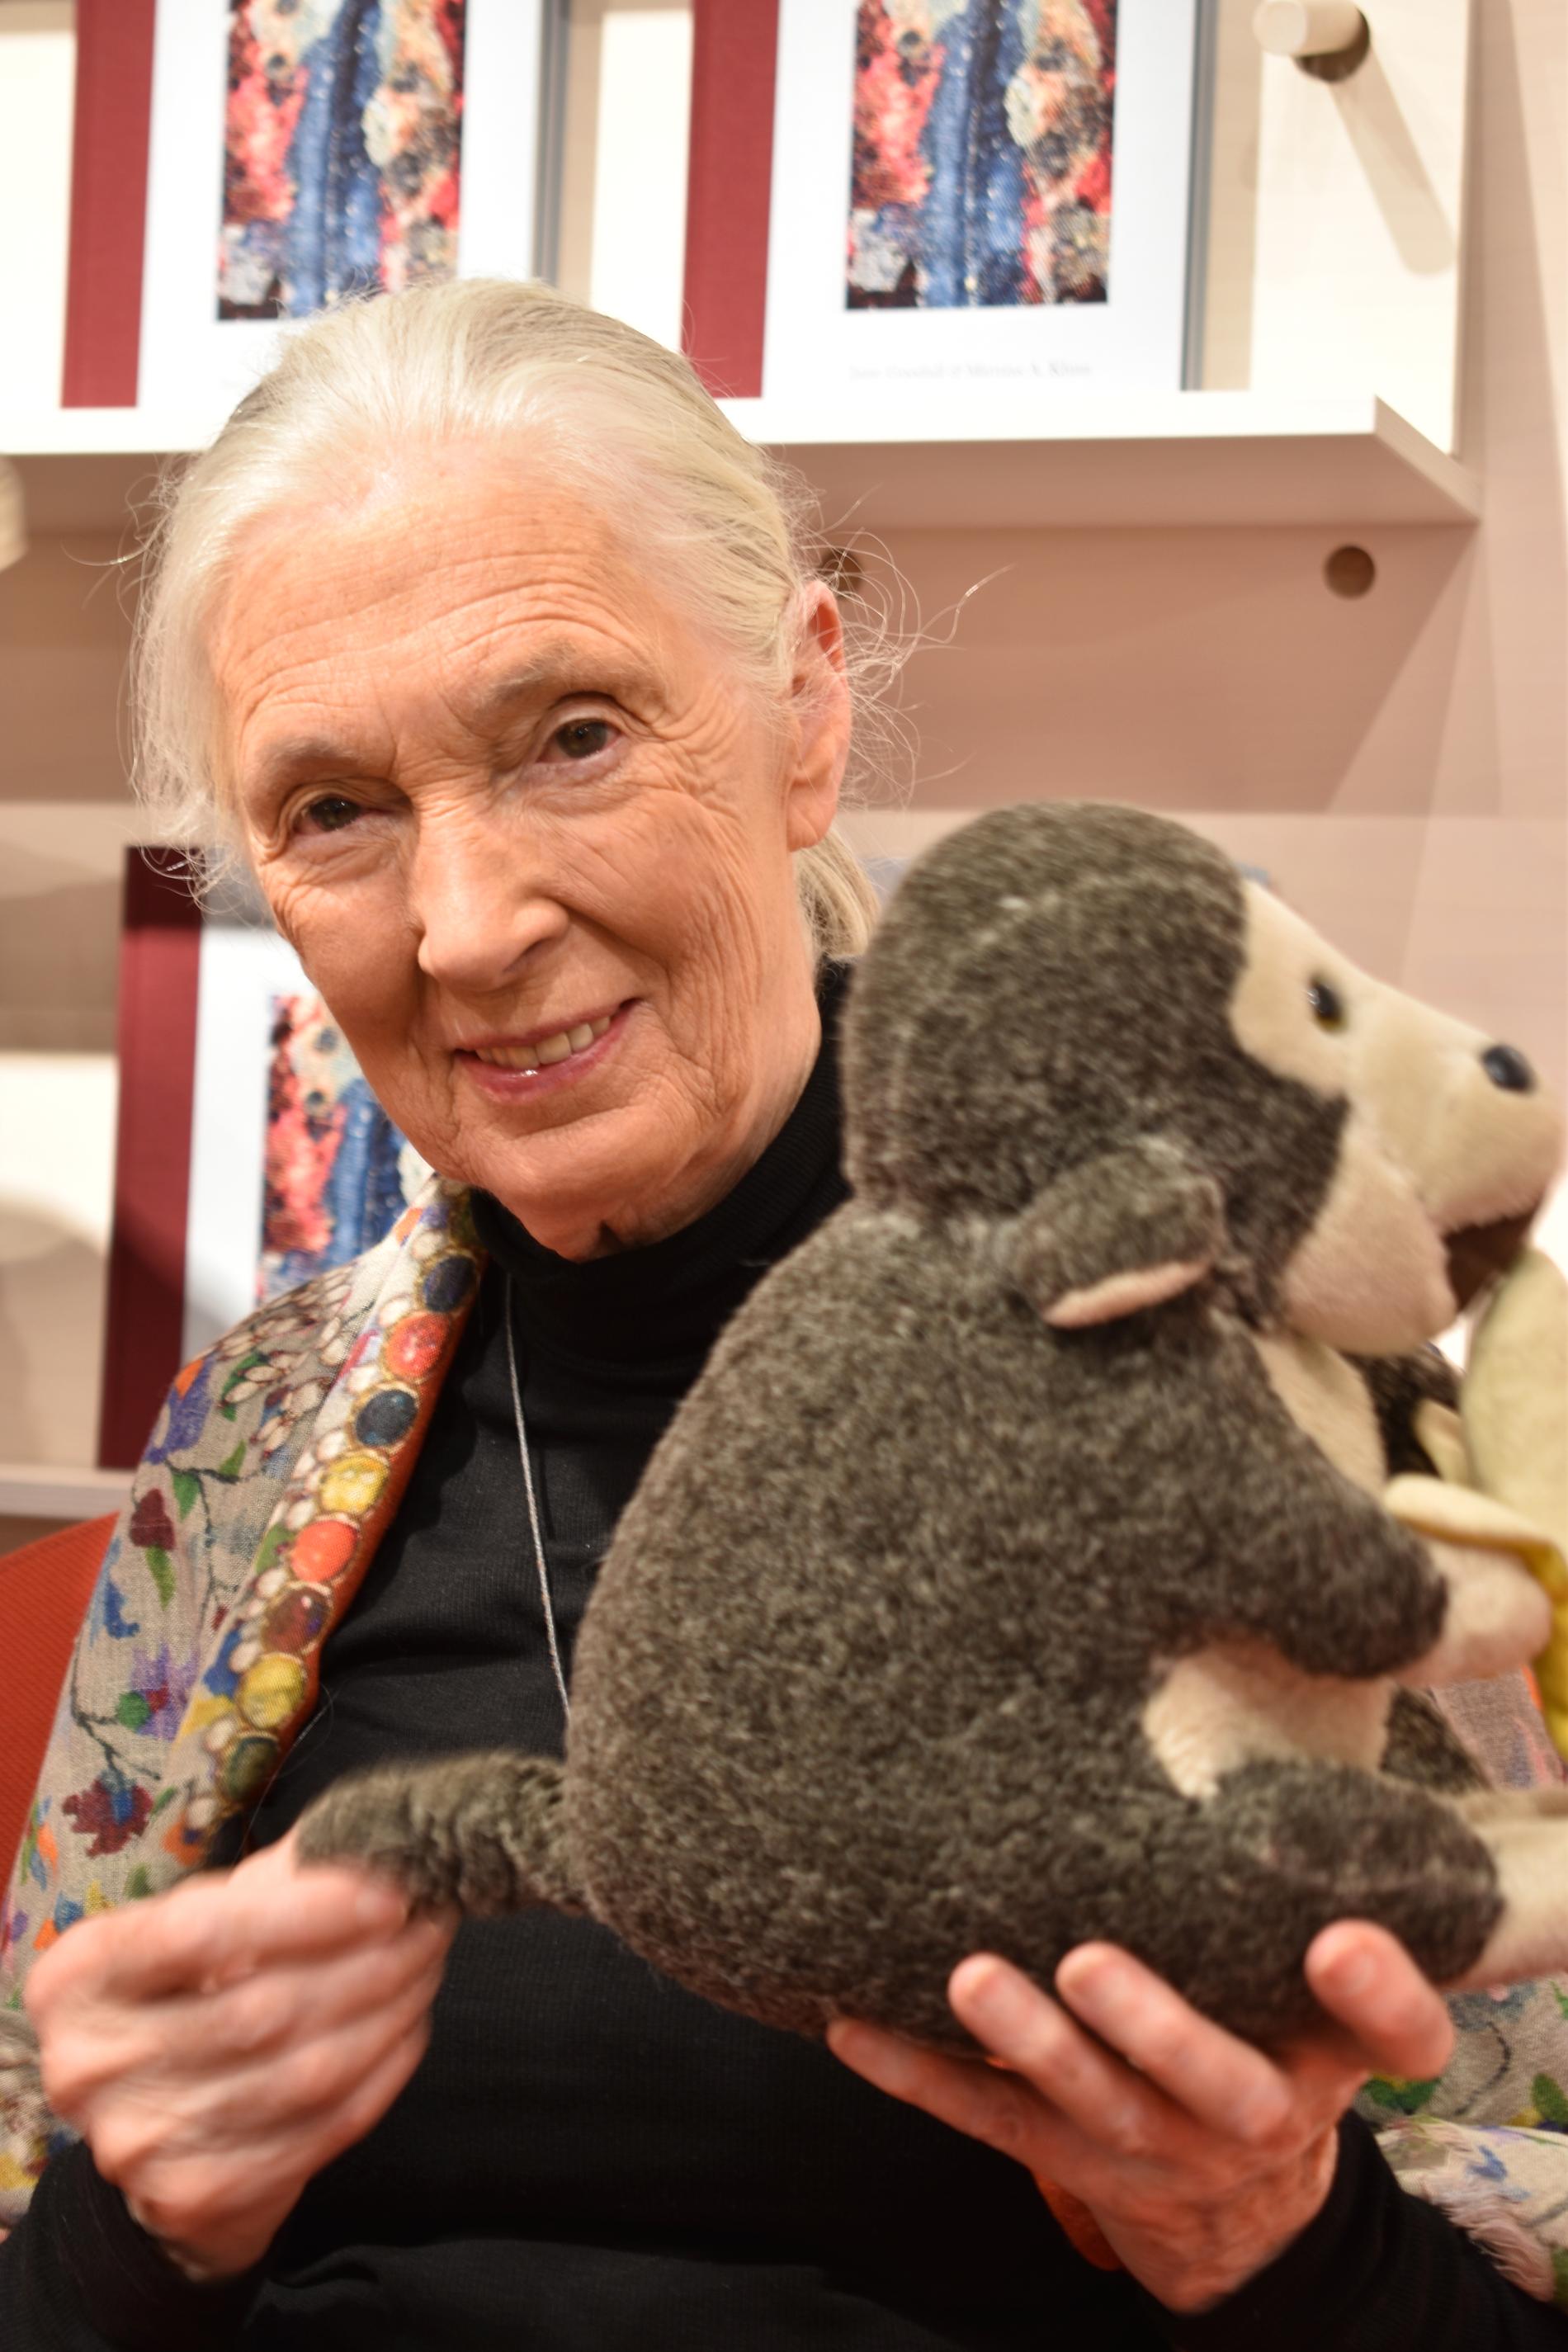 Jane Goodall besöker Stockholm i samband med den biologiska mångfaldens dag. Kramdjuret på bilden följer alltid med på hennes resor.